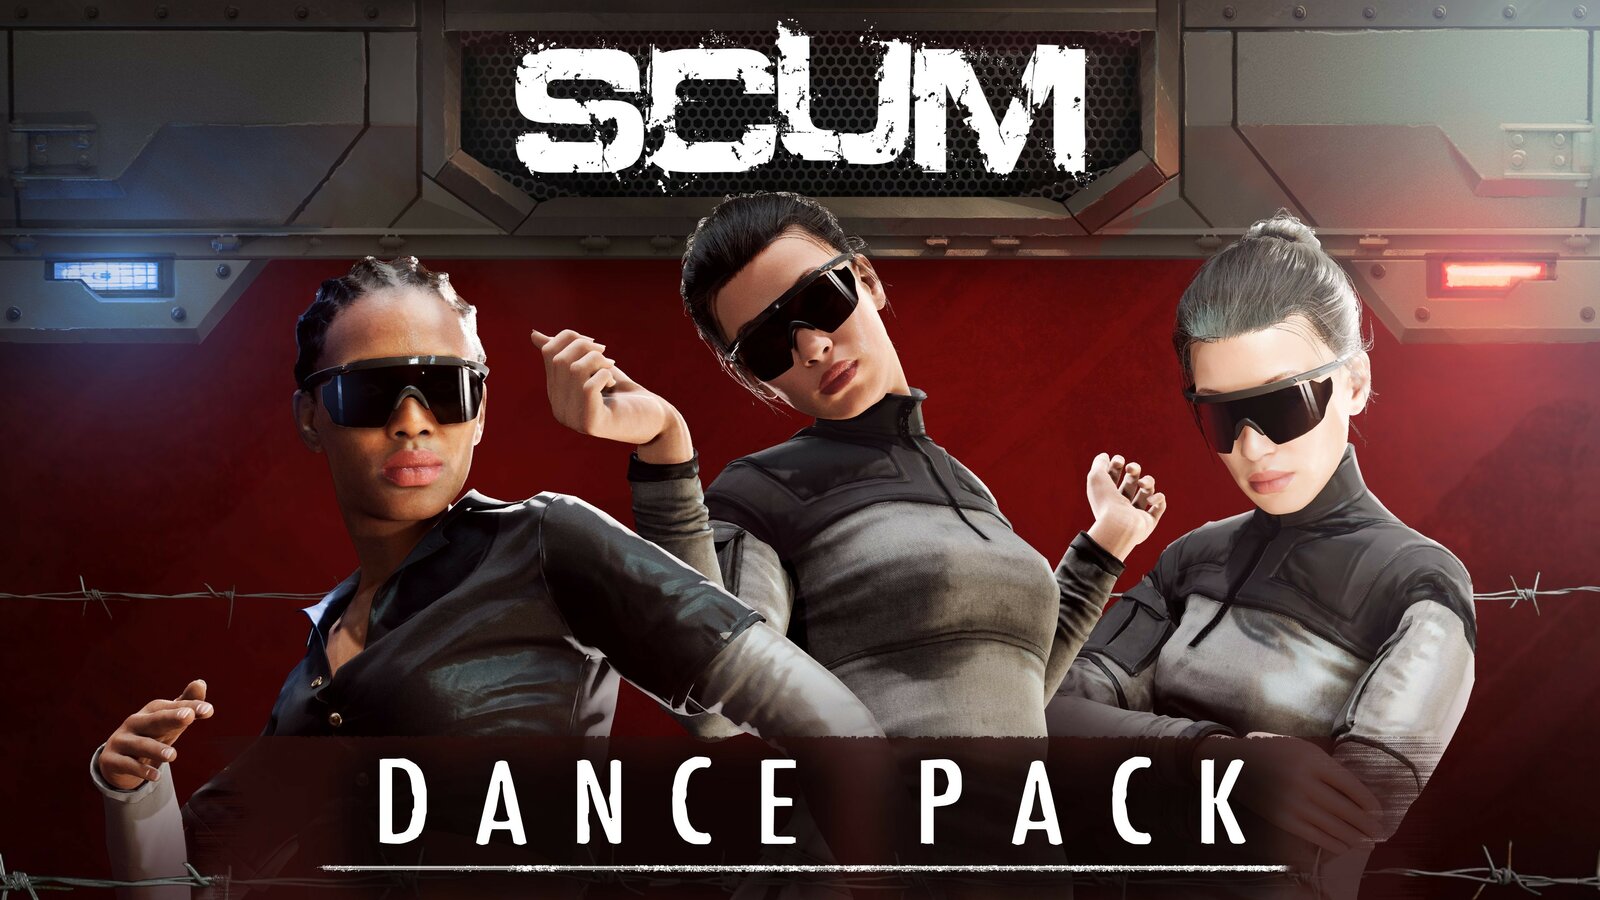 SCUM: Dance Pack